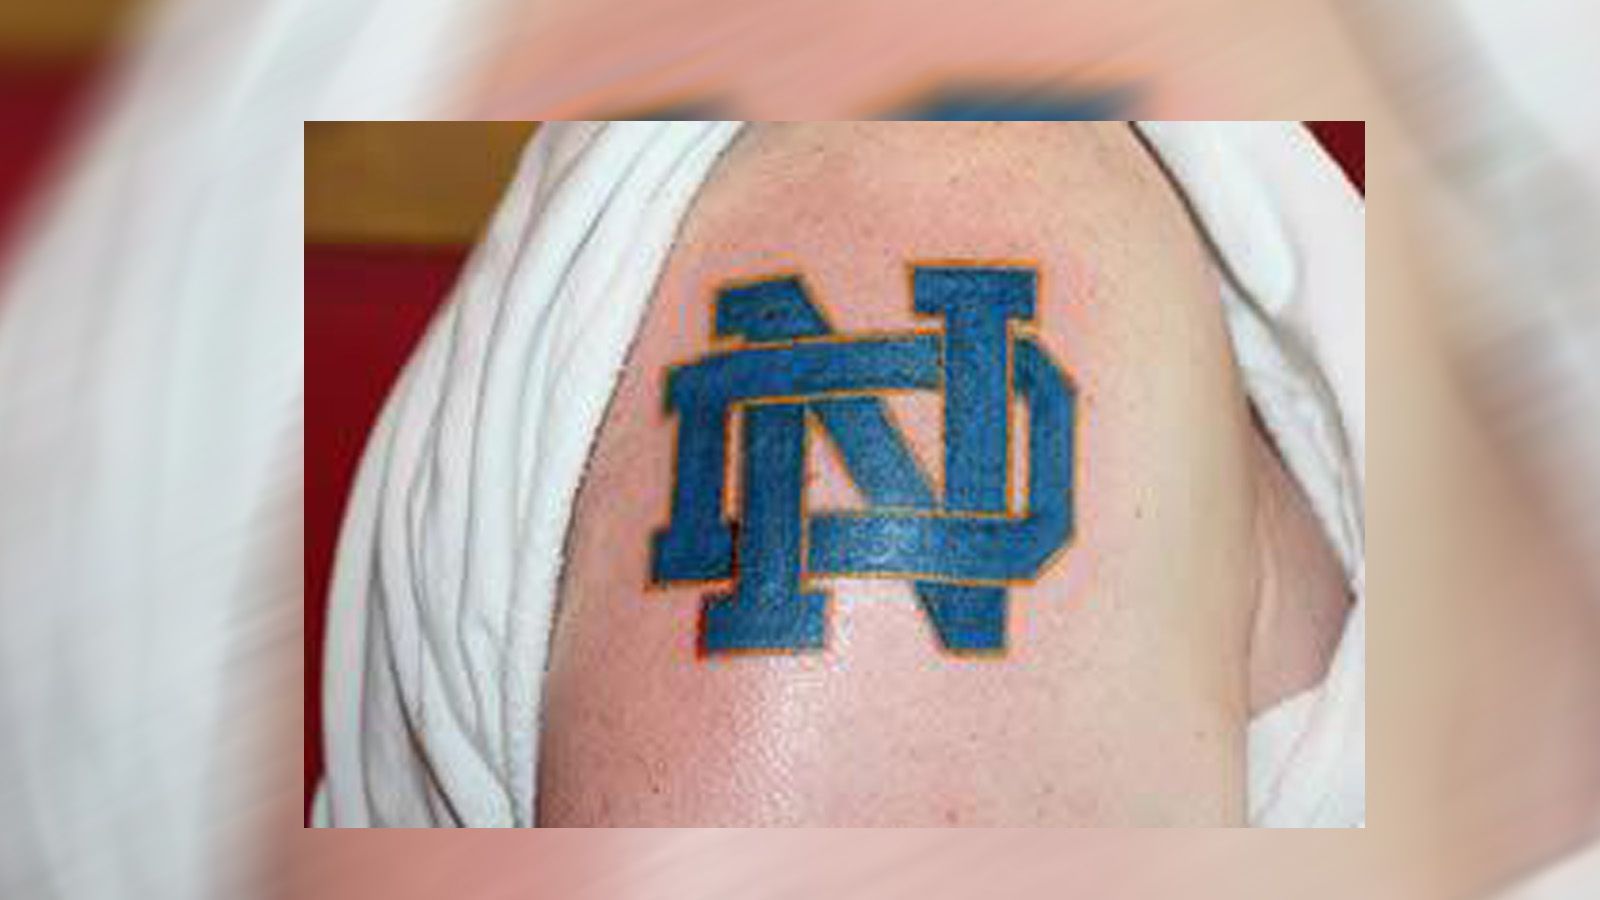 
                <strong>Notre Dame University </strong><br>
                Auch das legendäre College Notre Dame ist auf Fanhaut verewigt. In diesem Fall auf dem Oberarm eines leidenschaftlichen Anhängers.
              